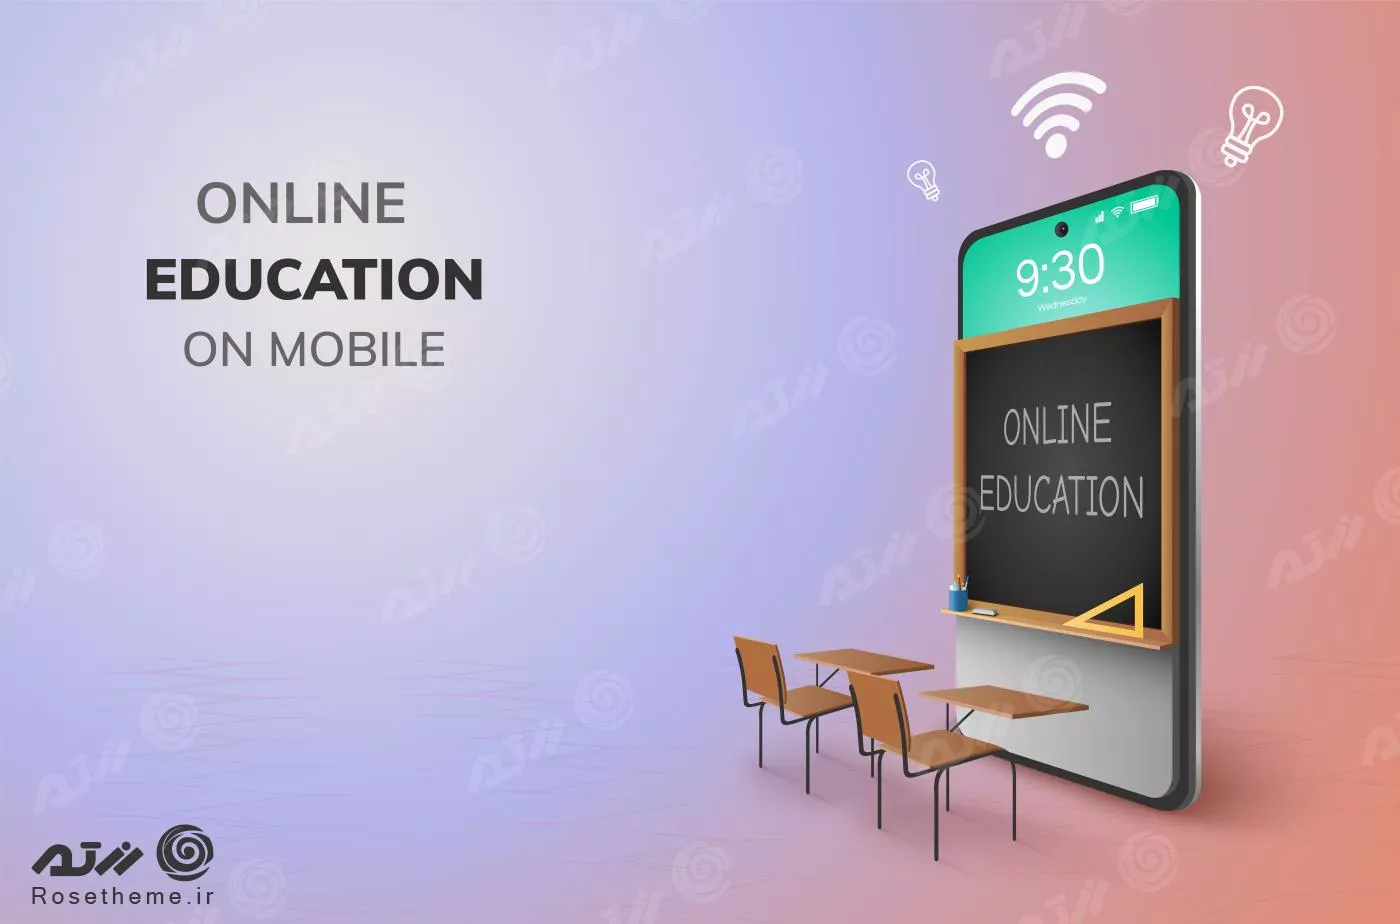 وکتور آموزش آنلاین و اینترنتی شامل موبایل و تخته سیاه به همراه نیمکت های روبروی موبایل فایل EPS لایه باز 23389